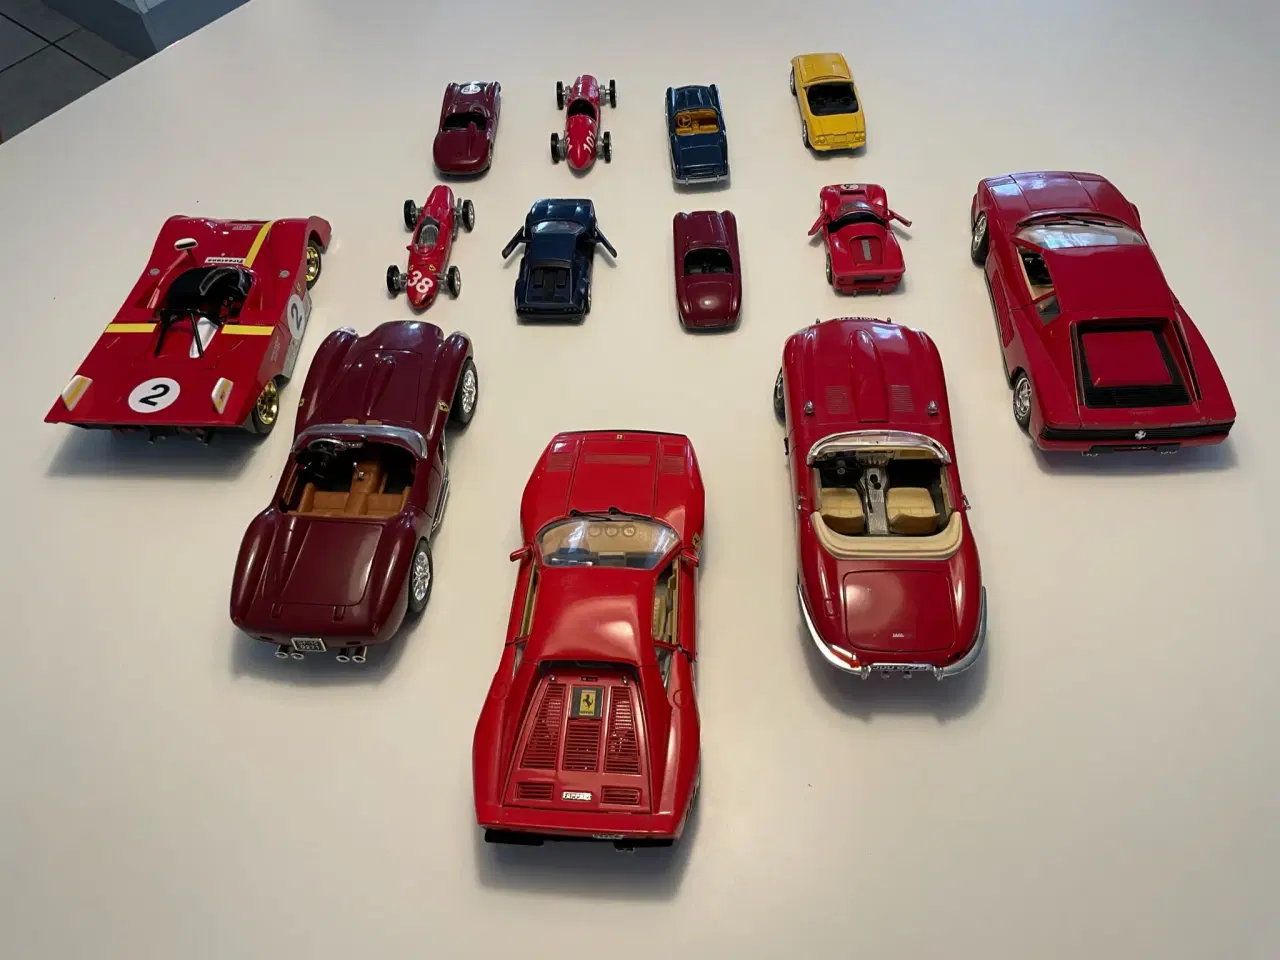 Billede 2 - Over 40 års gamle legetøjs biler, 13 stk 